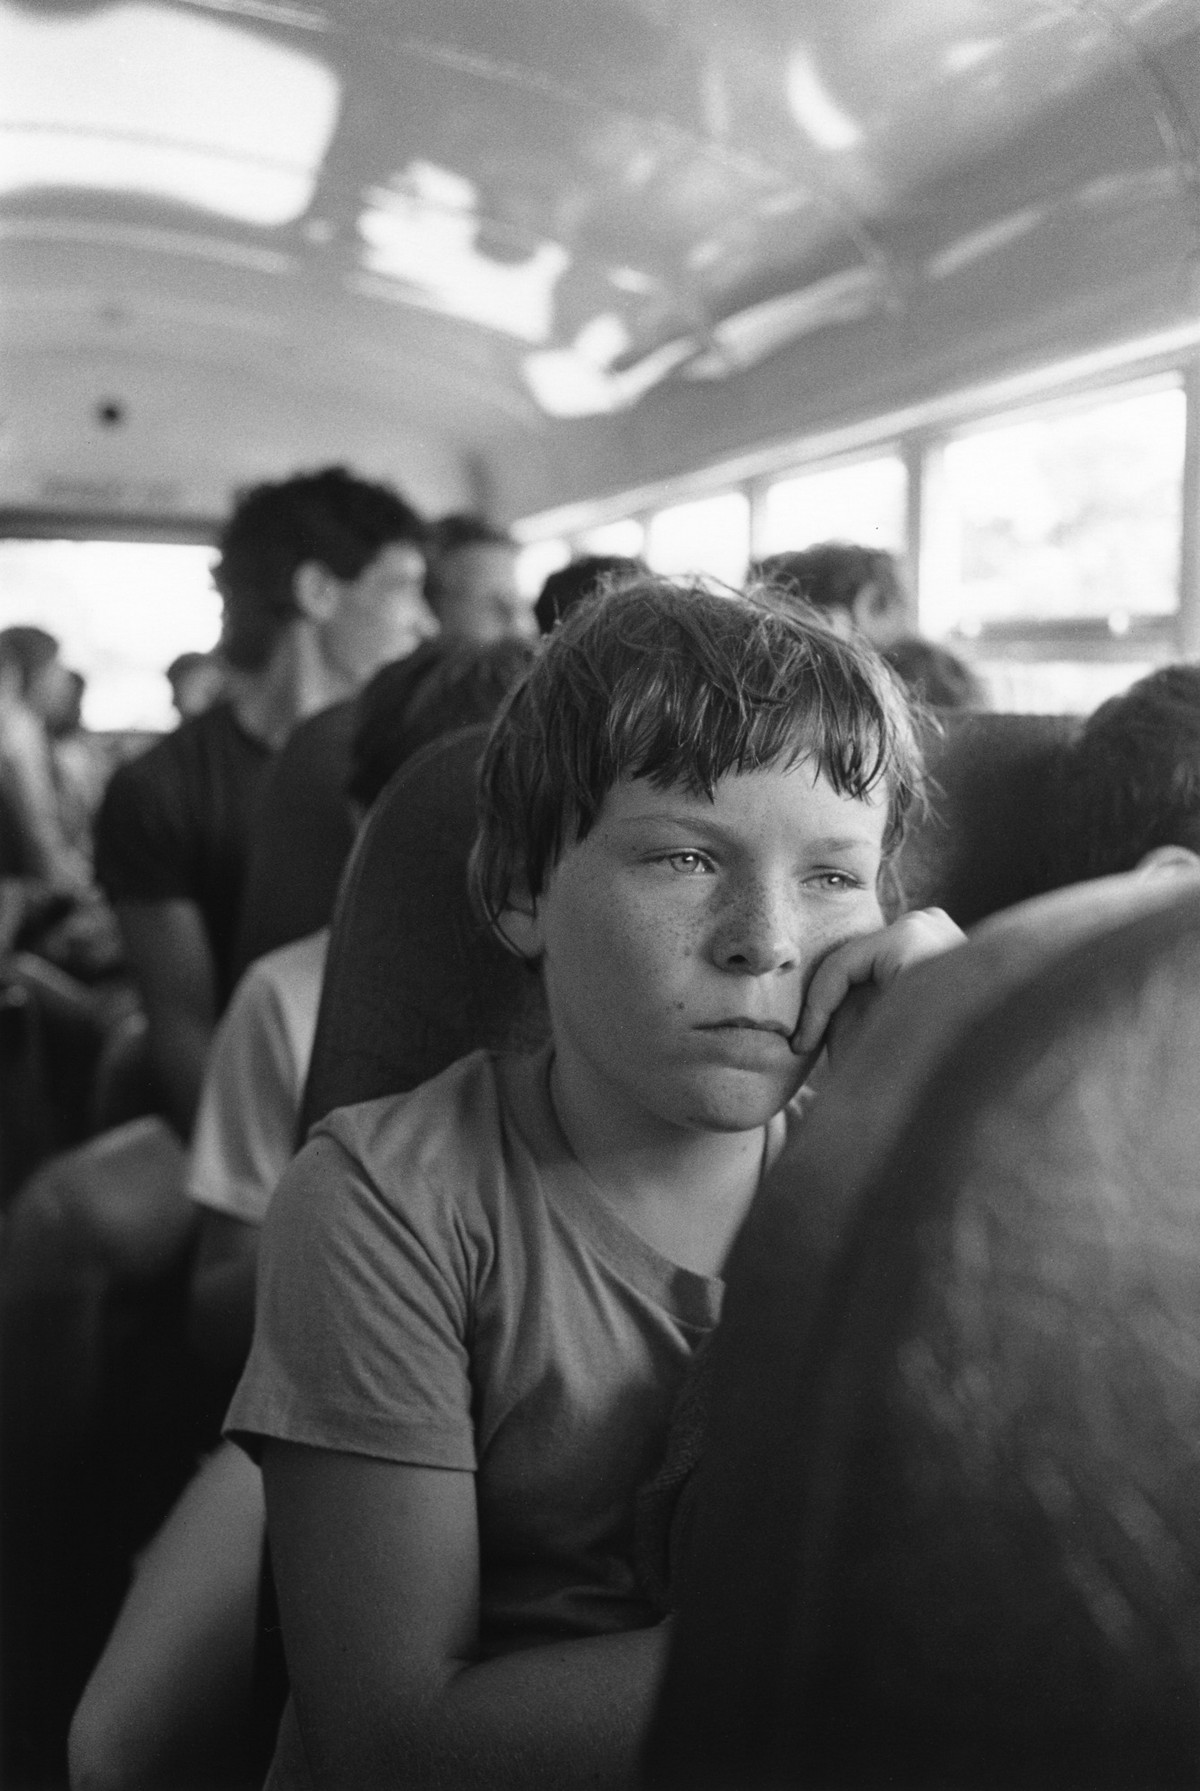 Моменты в летнем лагере на снимках Марка Стейнмеца